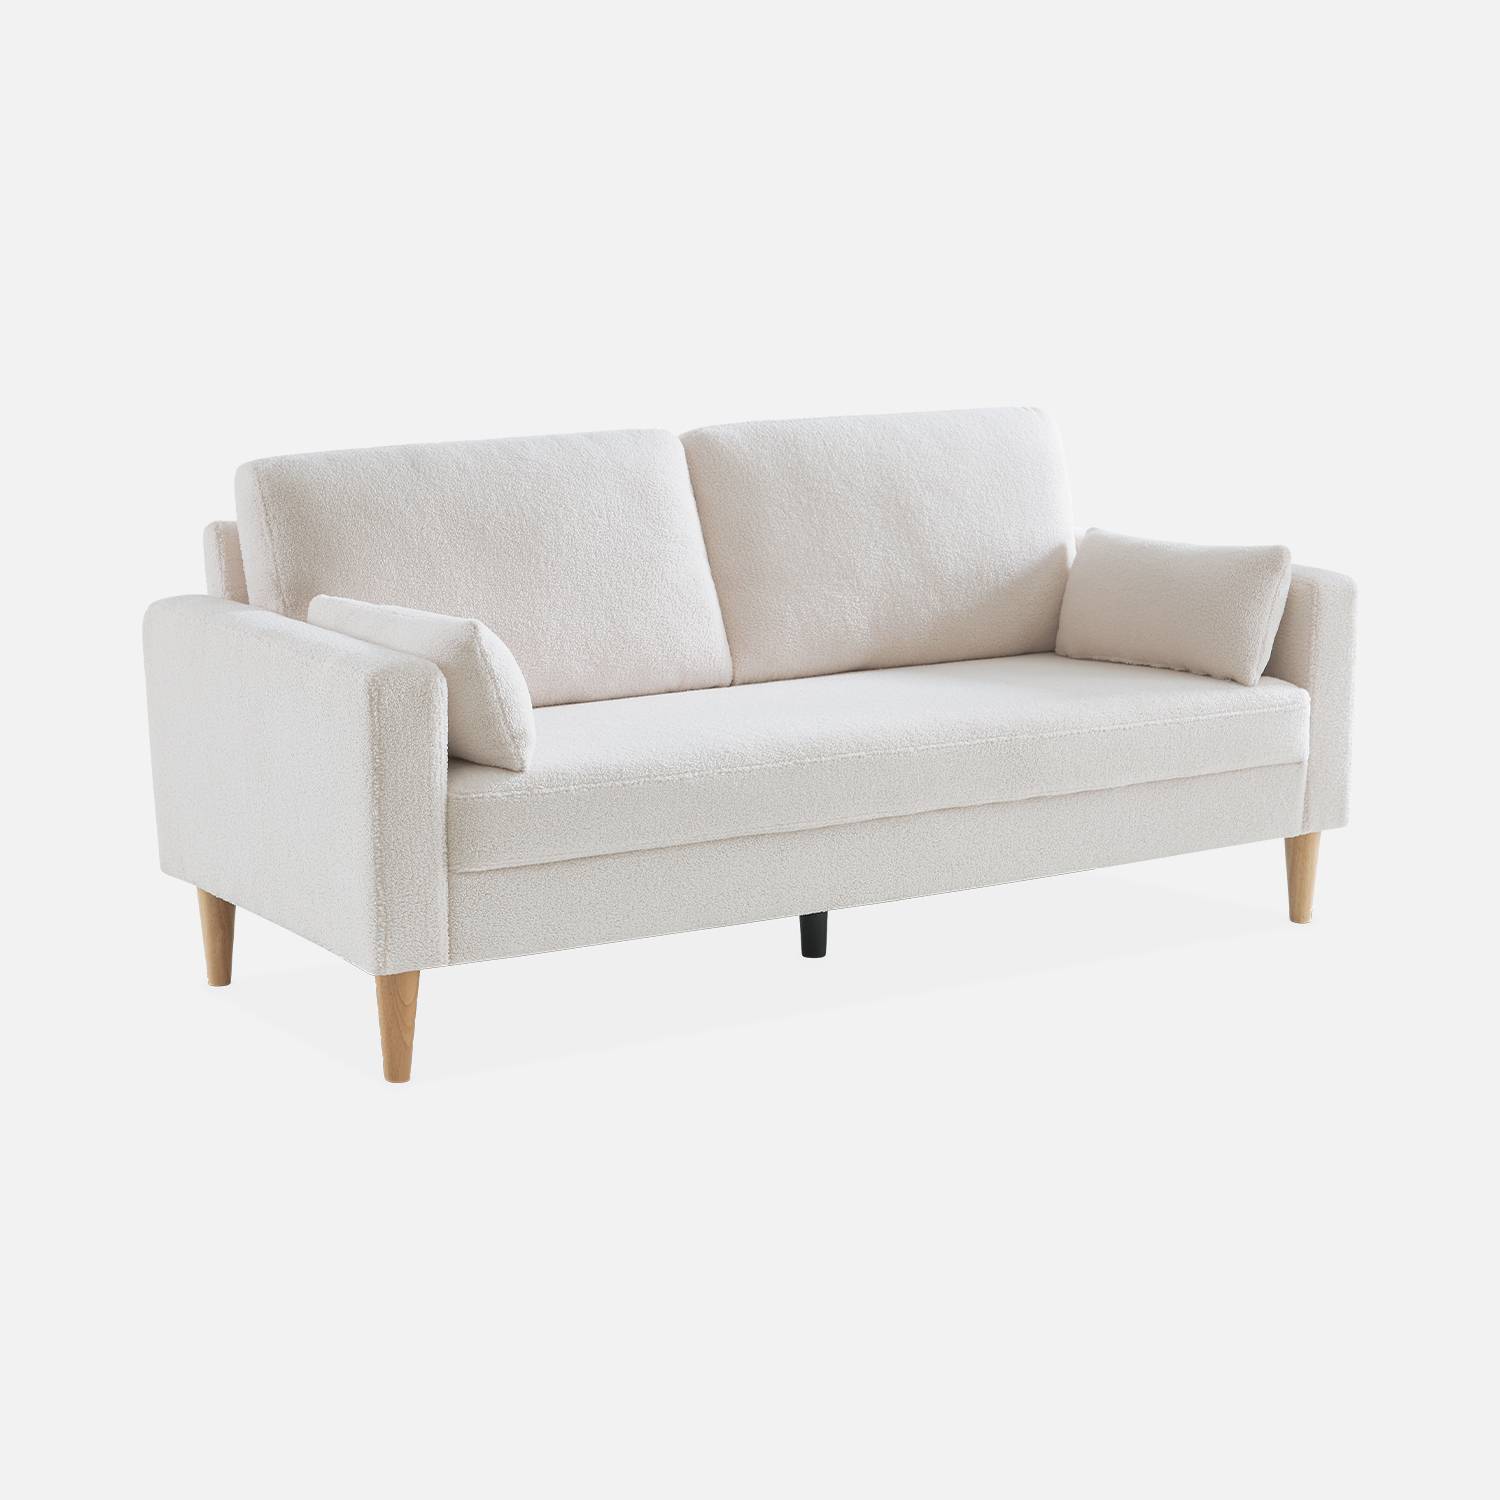 Sofá com caracóis brancos - Bjorn - sofá reto de 3 lugares com pernas de madeira, estilo escandinavo Photo3